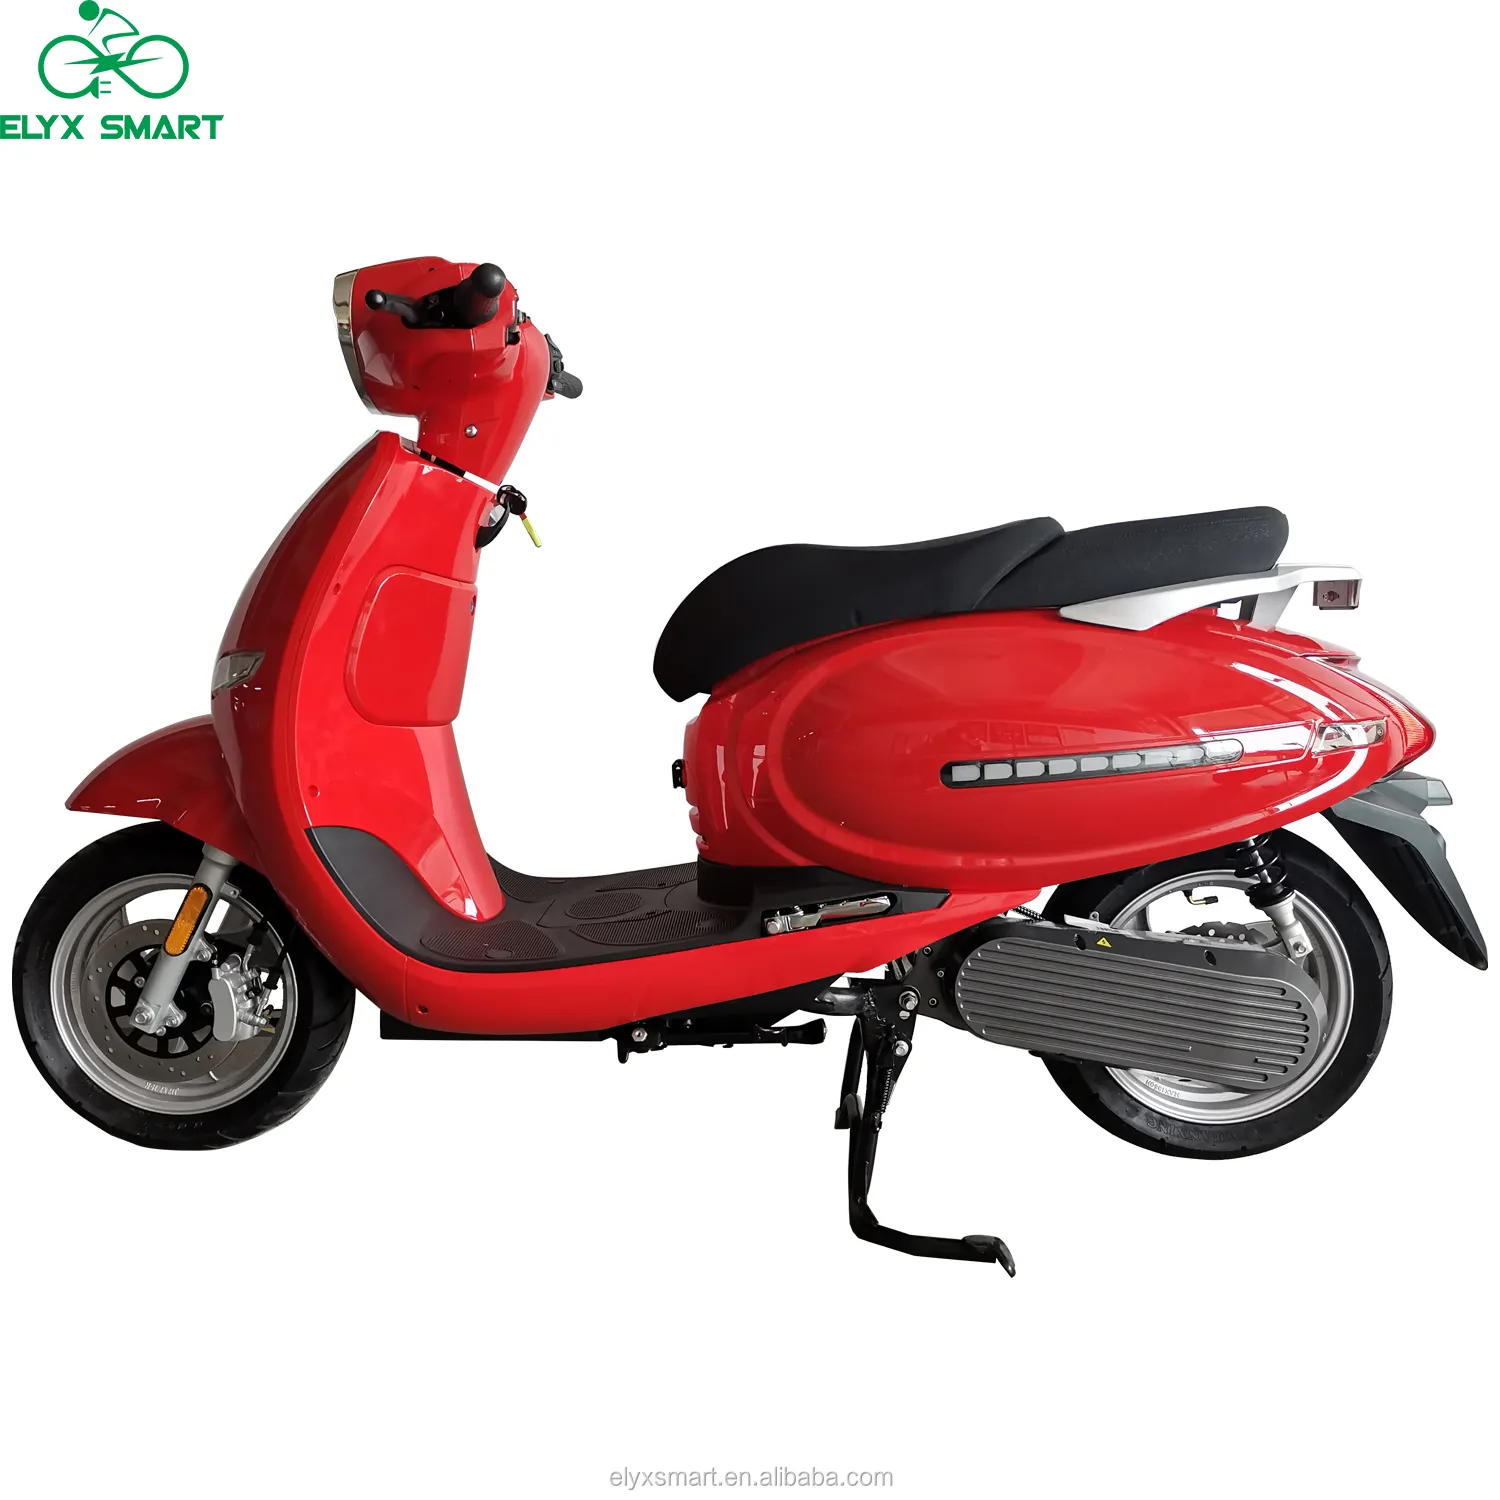 Elyx Smart OEM завод 72 В EEC мотоцикл 180 км дальнего действия 3000 Вт высокоскоростной Электрический скутер мотоцикл для взрослых